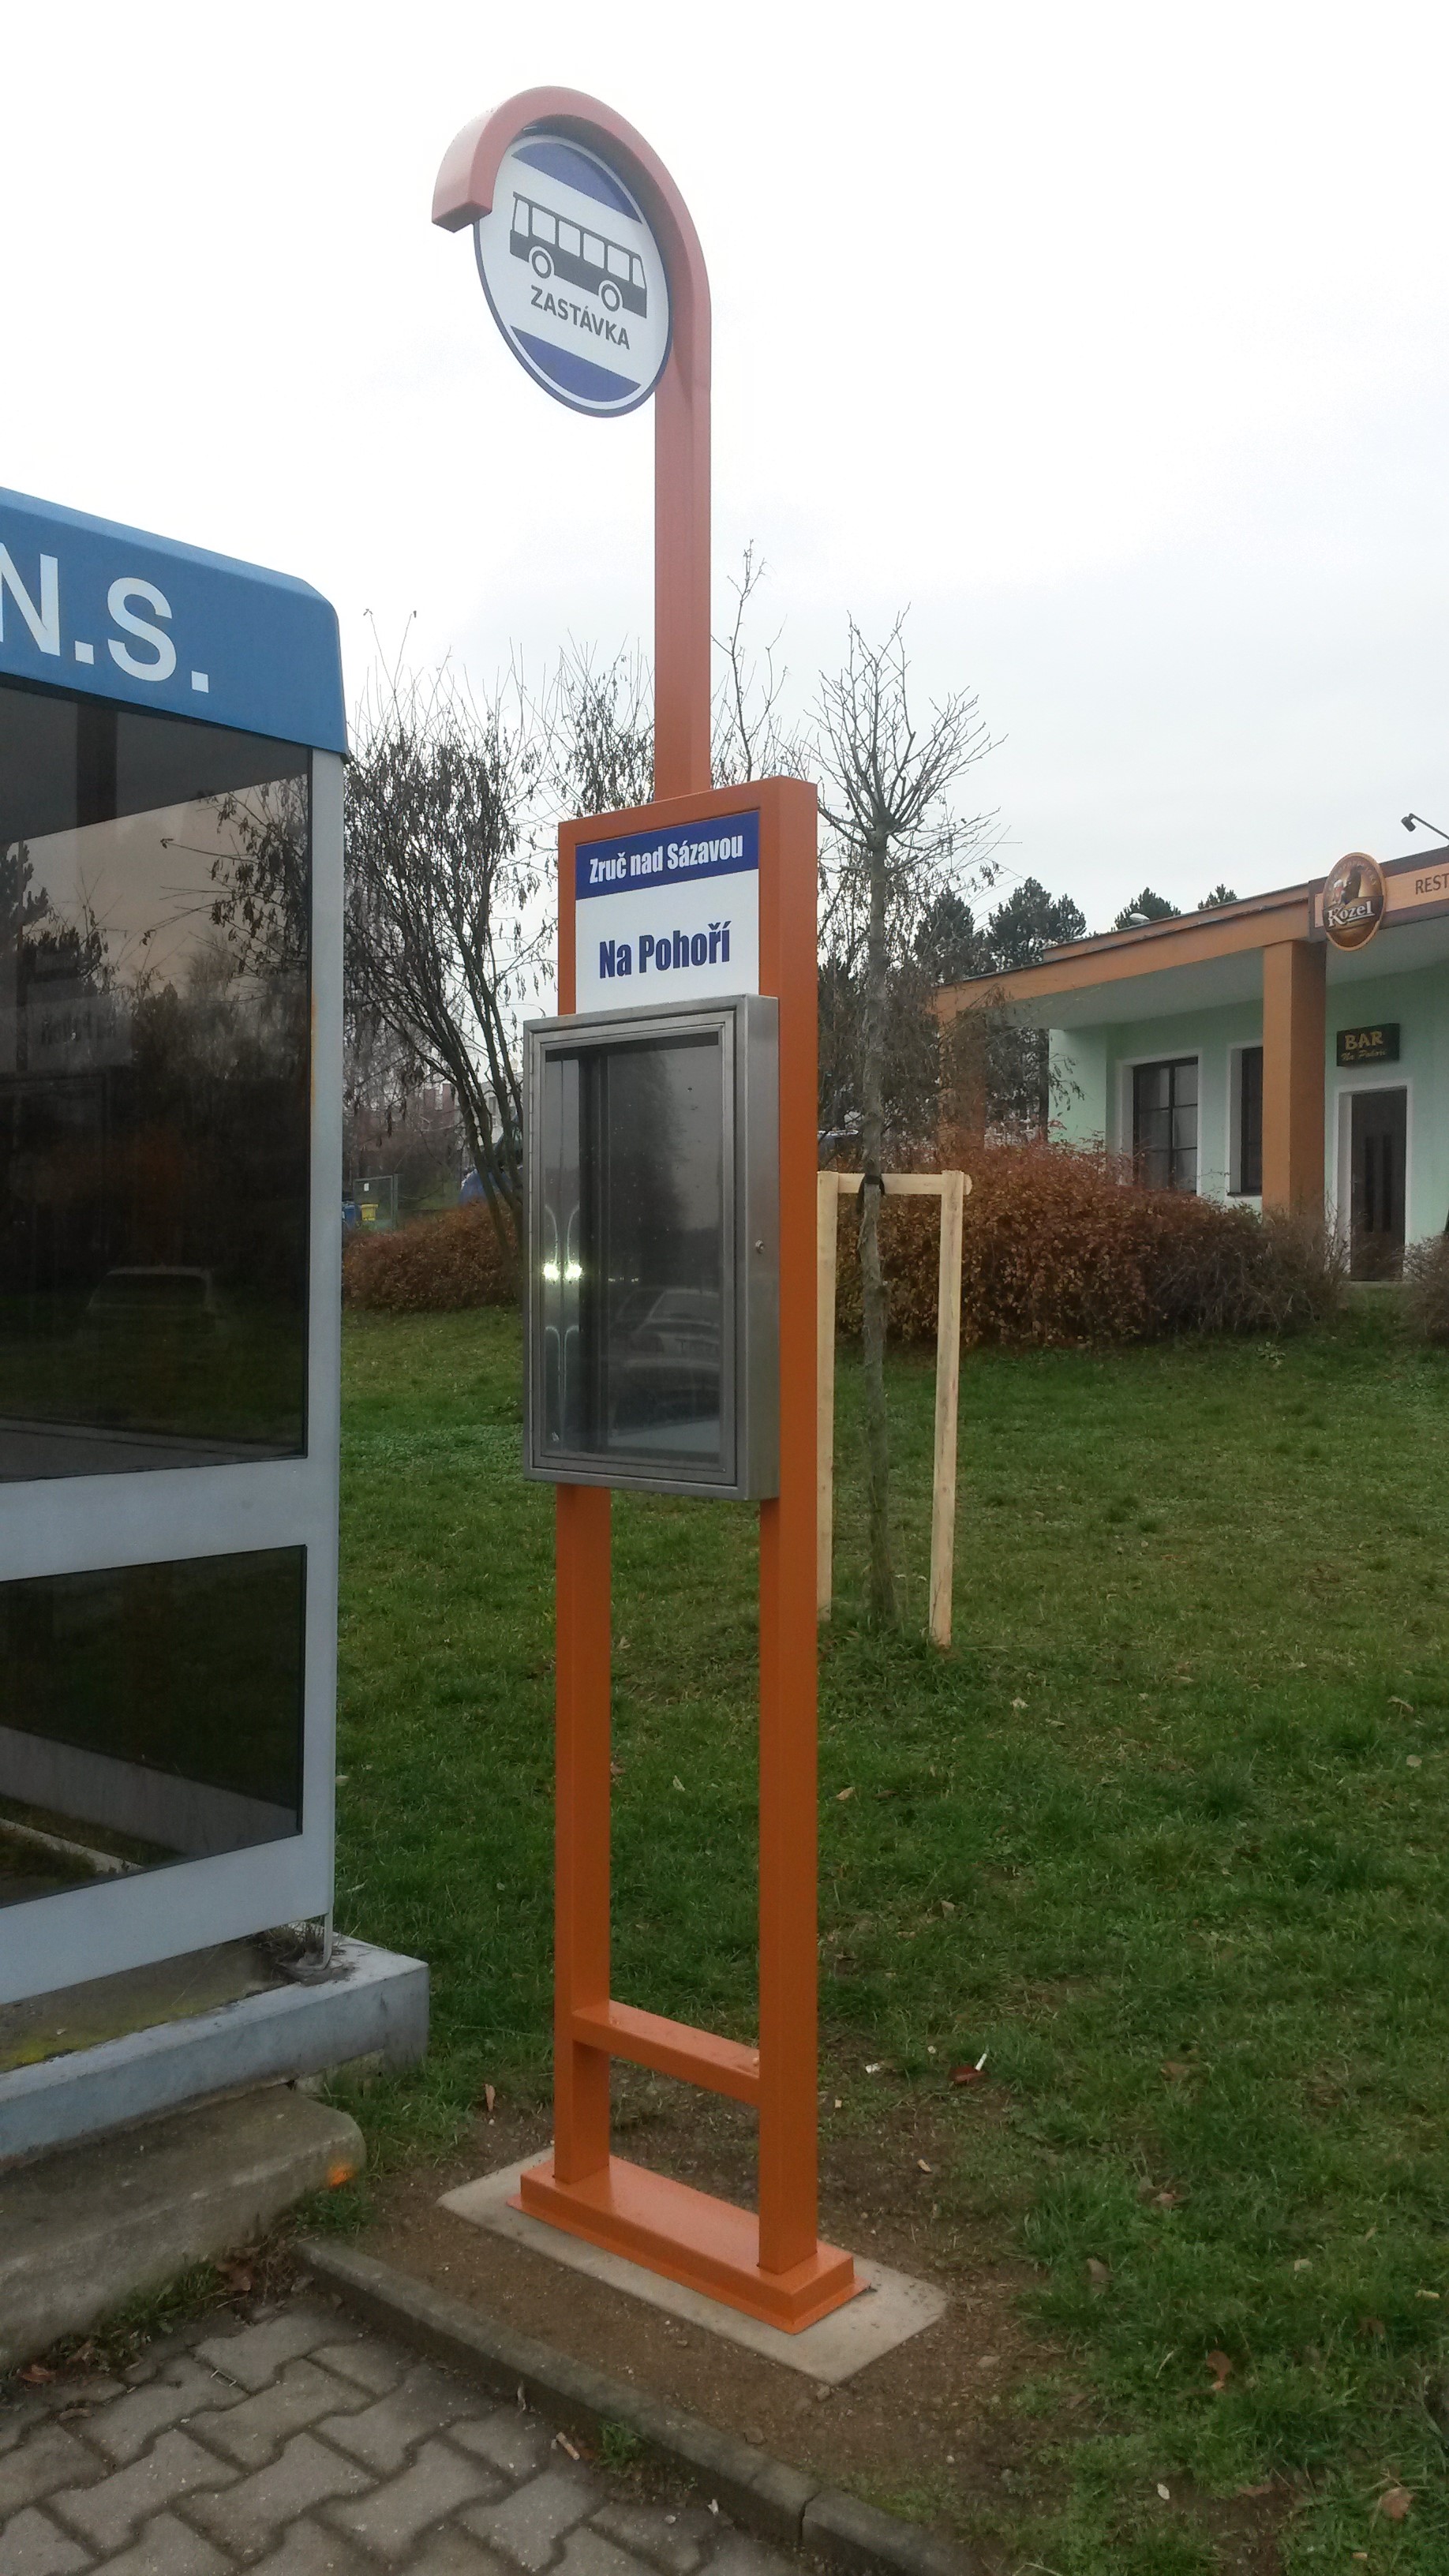 Komaxitované totemy k autobusovým zastávkám - město Zruč nad Sázavou